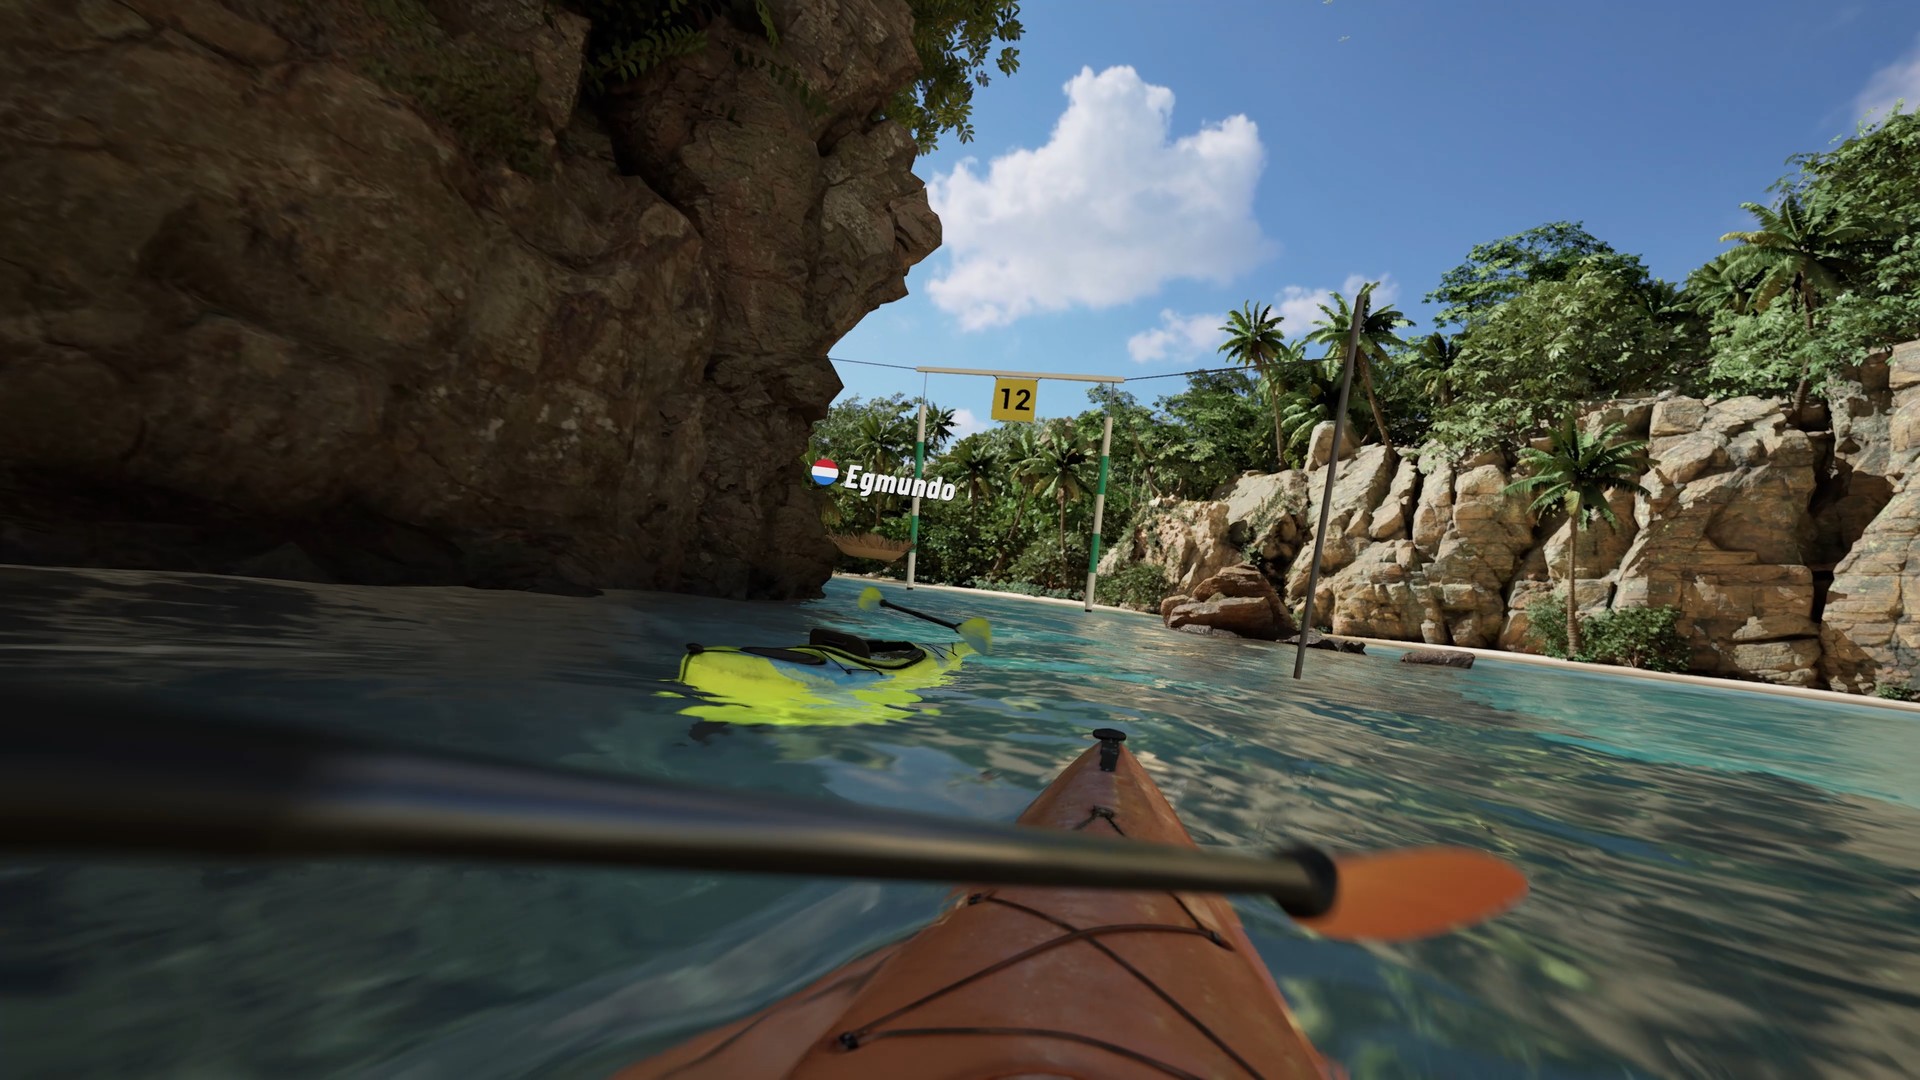 Kayak VR: Mirage Free Download